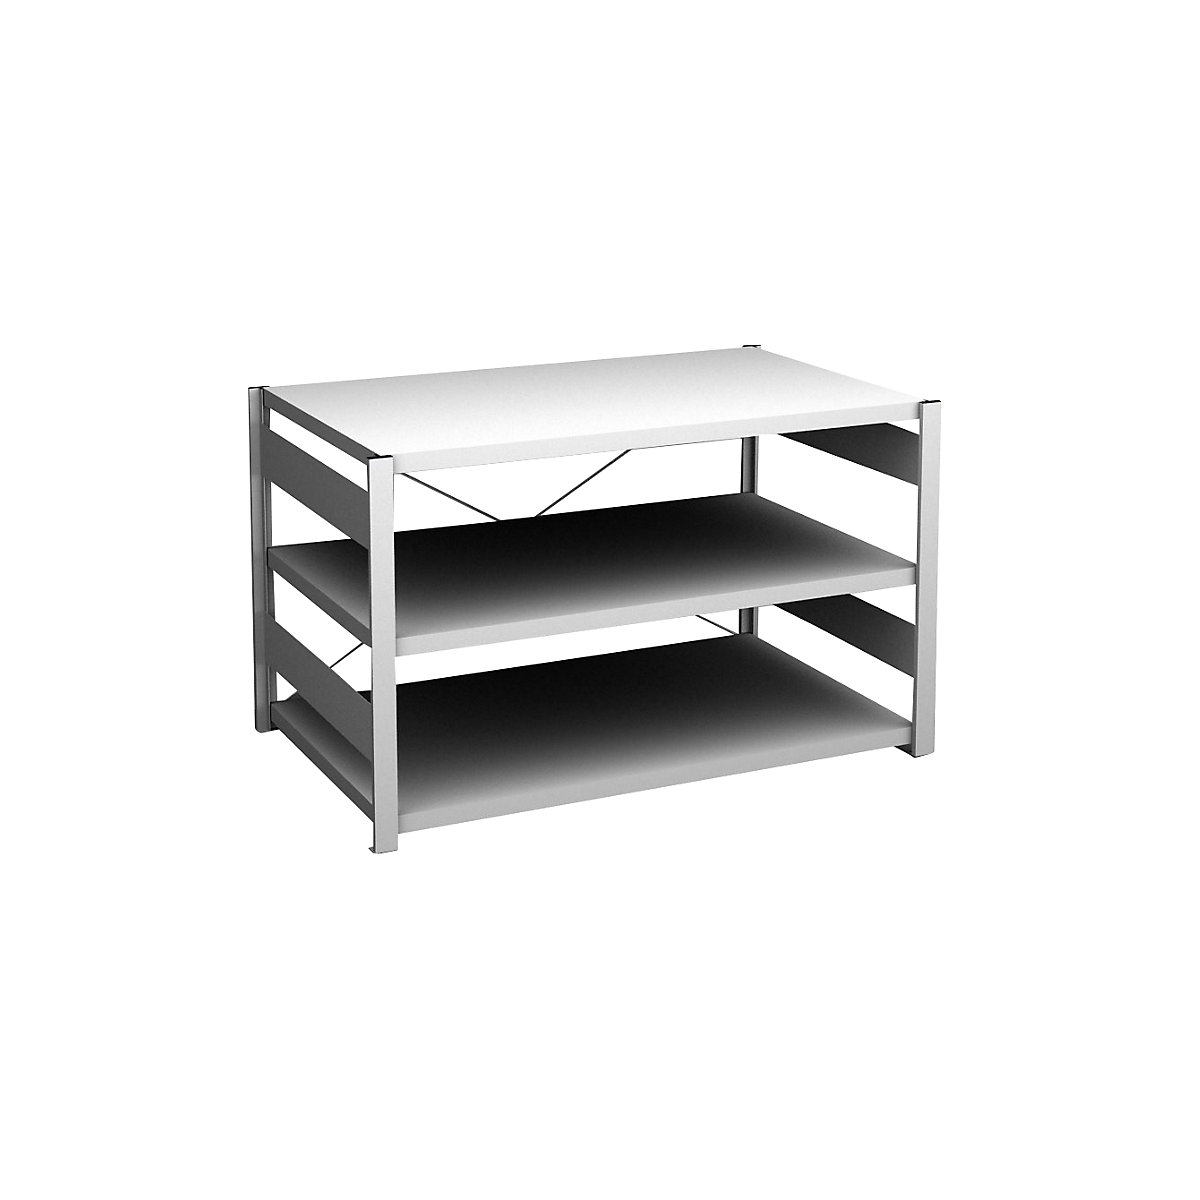 Sideboard shelving unit, light grey – hofe, height 825 mm, 3 shelves, standard shelf unit, shelf depth 800 mm, max. shelf load 190 kg-7